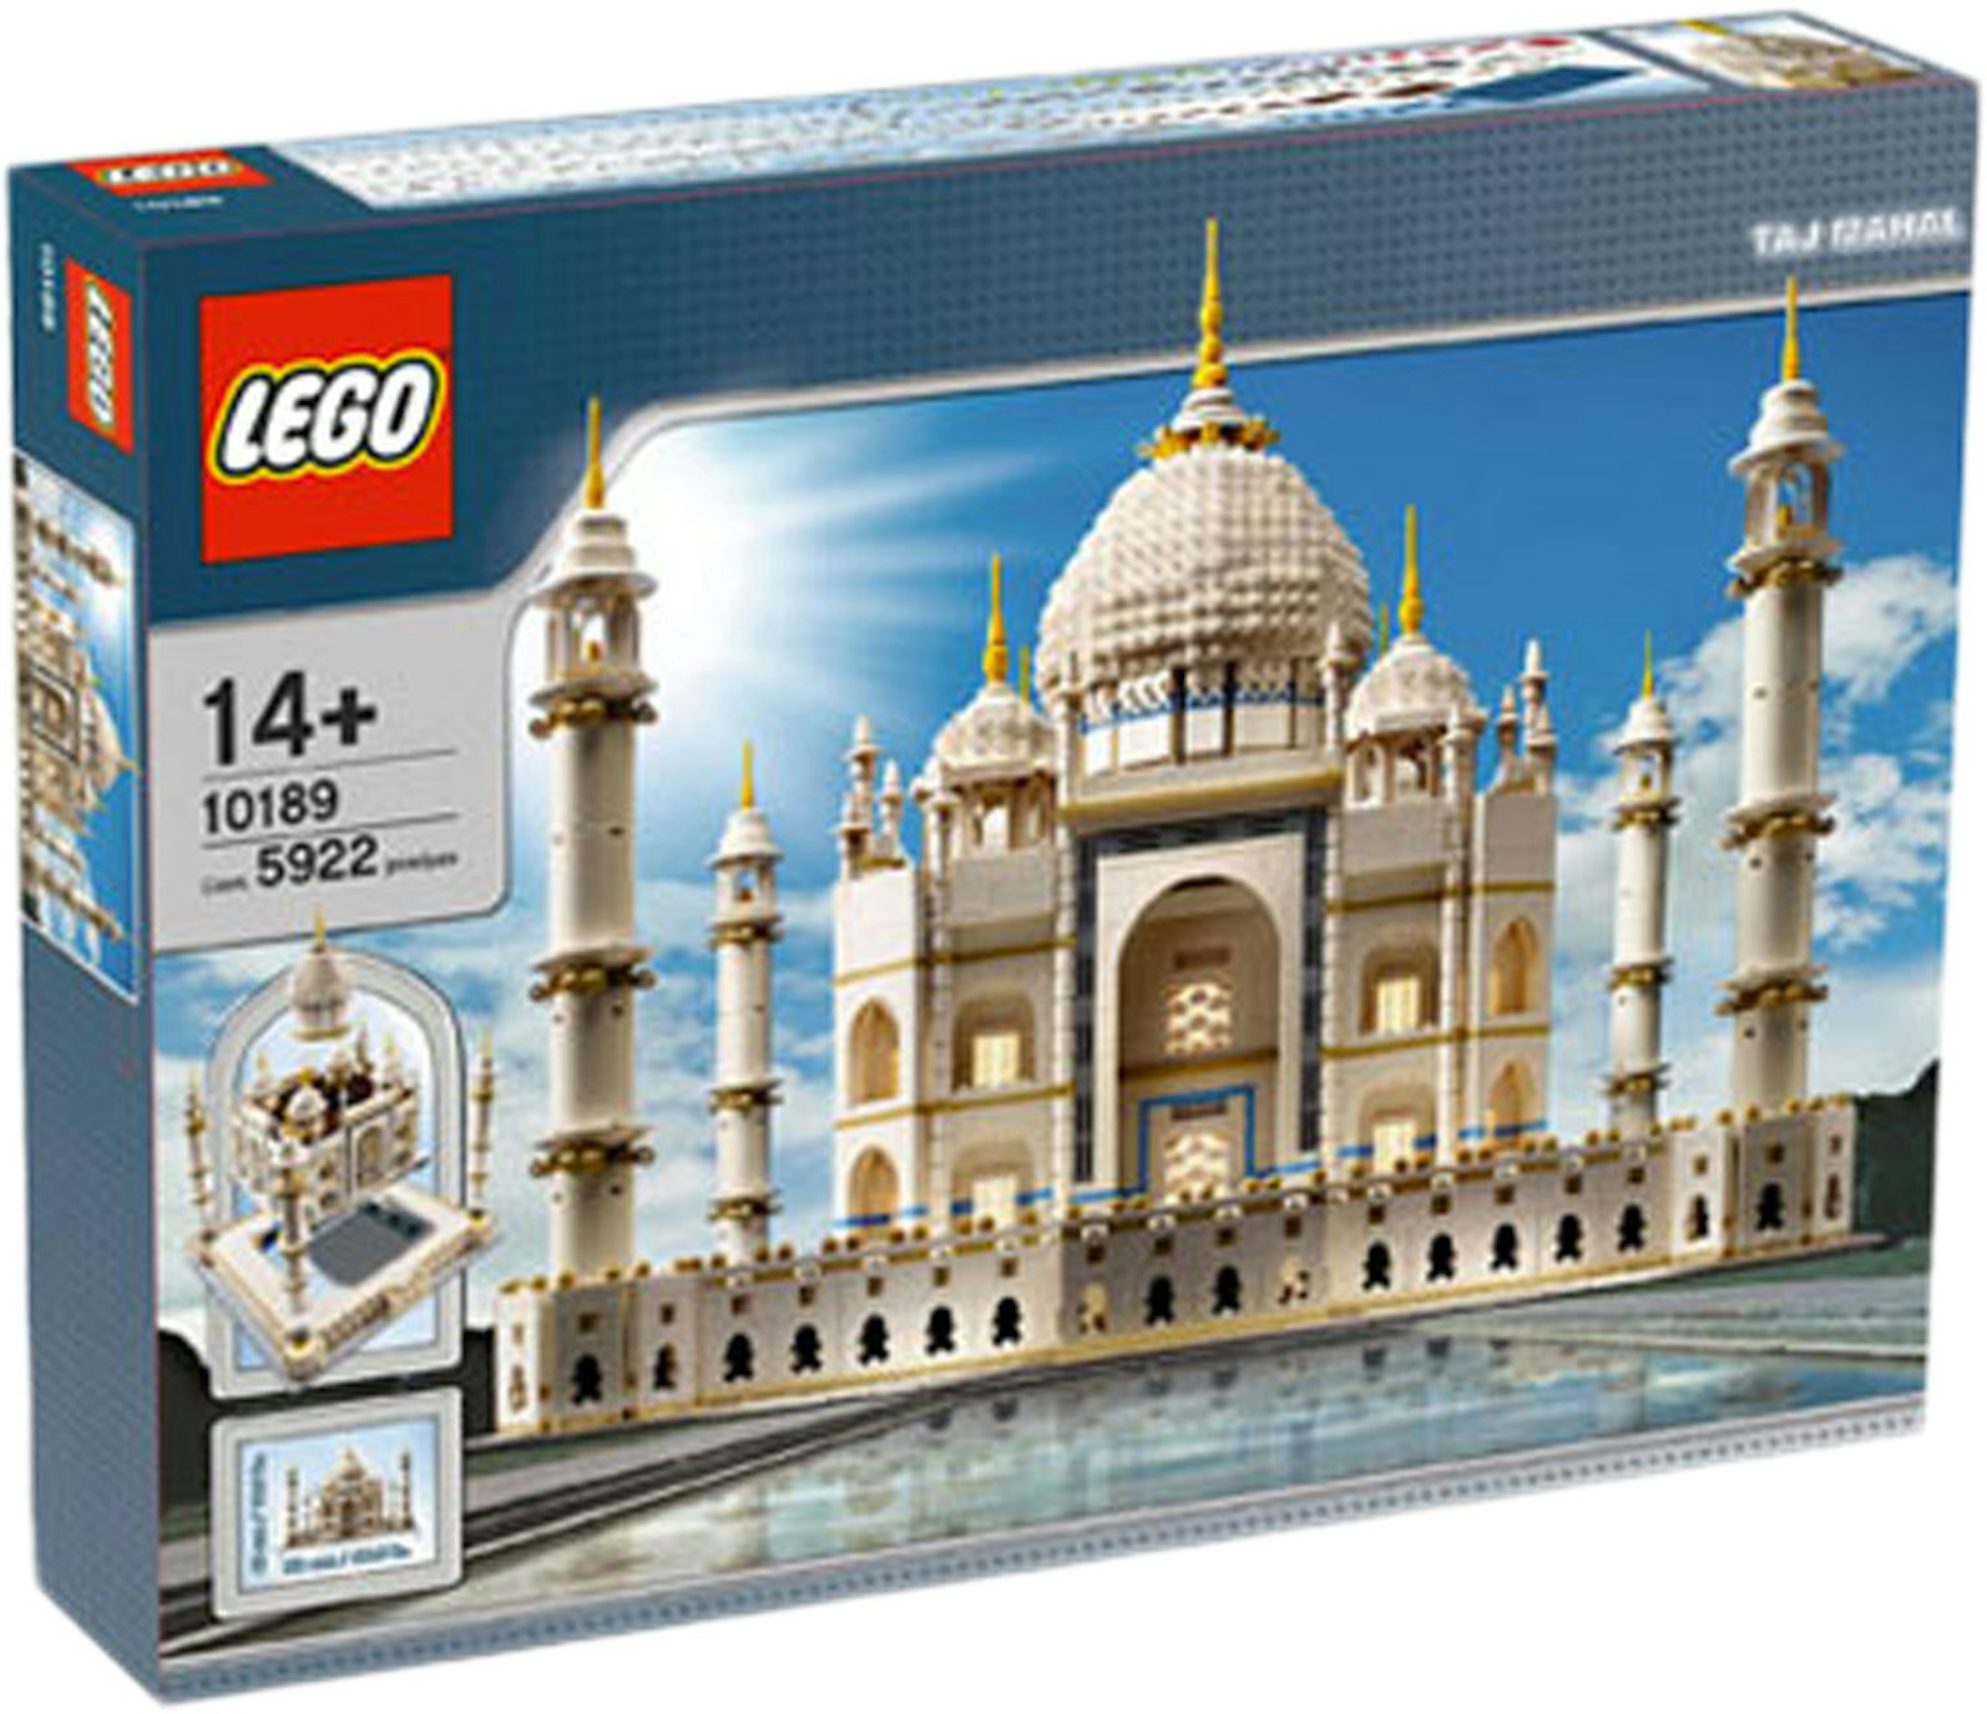 forfatter Indsigt helt bestemt LEGO Creator Expert Taj Mahal Set 10189 - US